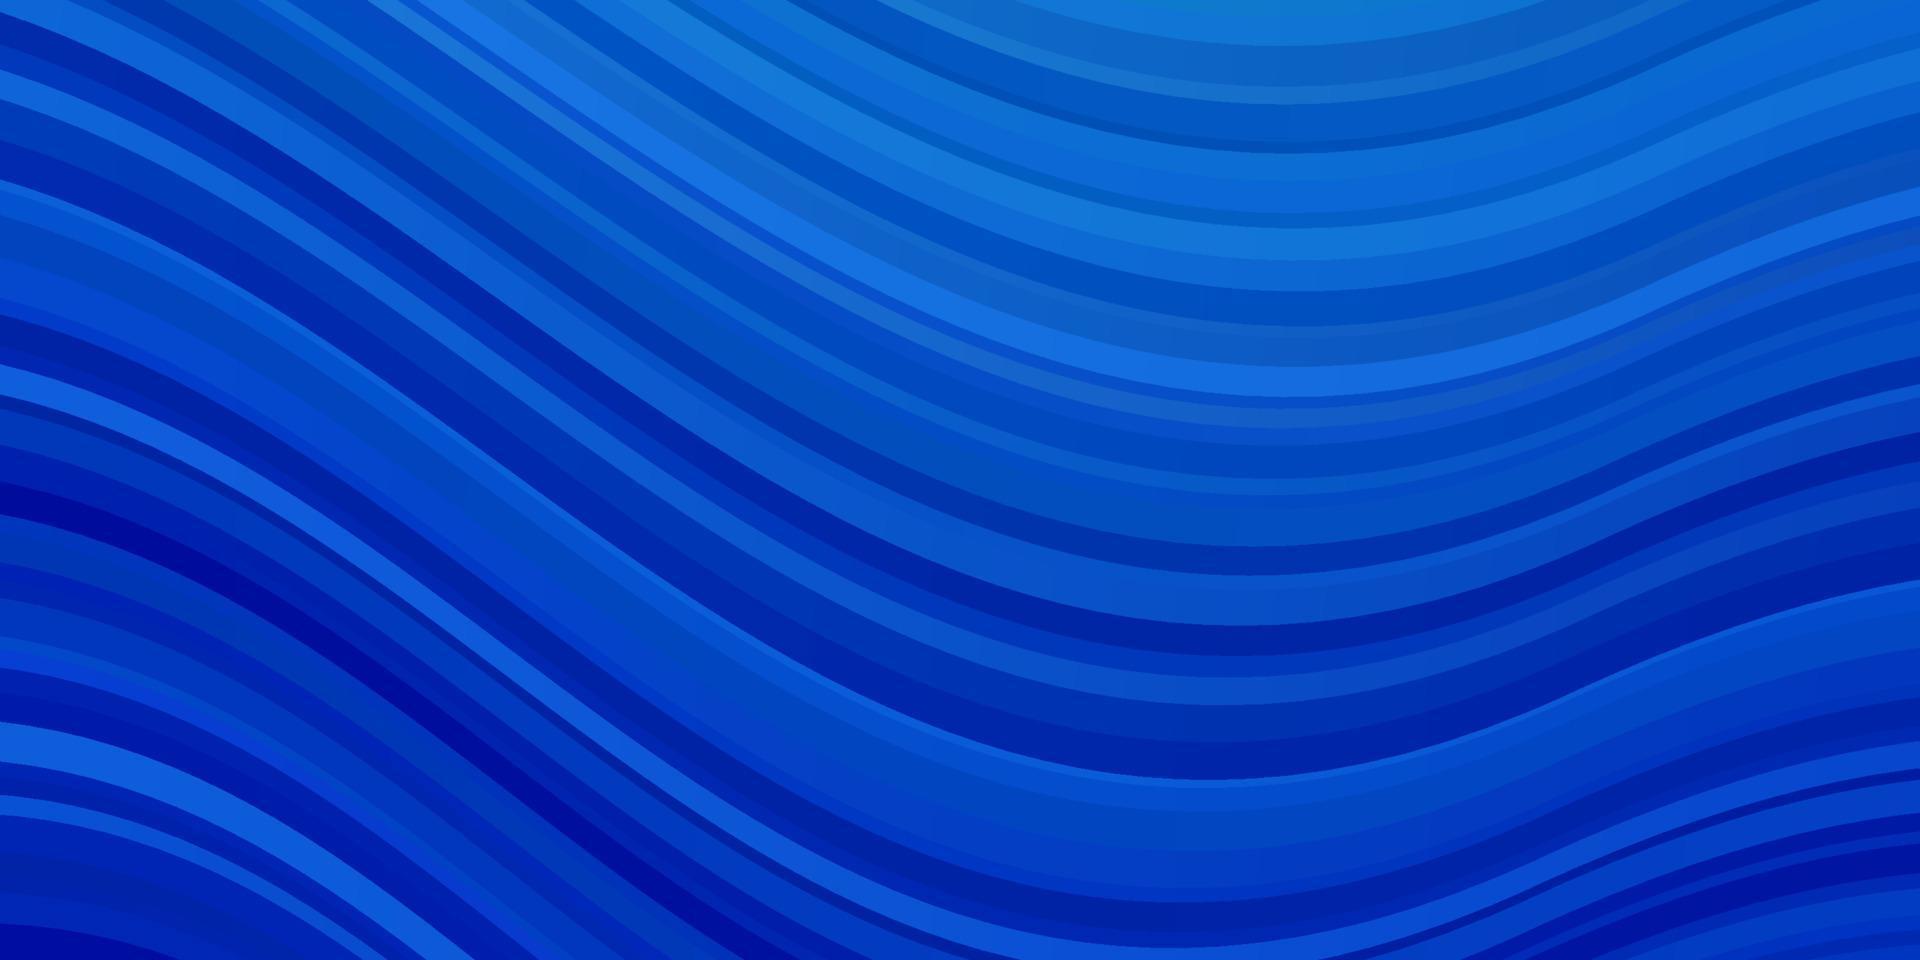 plantilla de vector azul claro con líneas curvas.